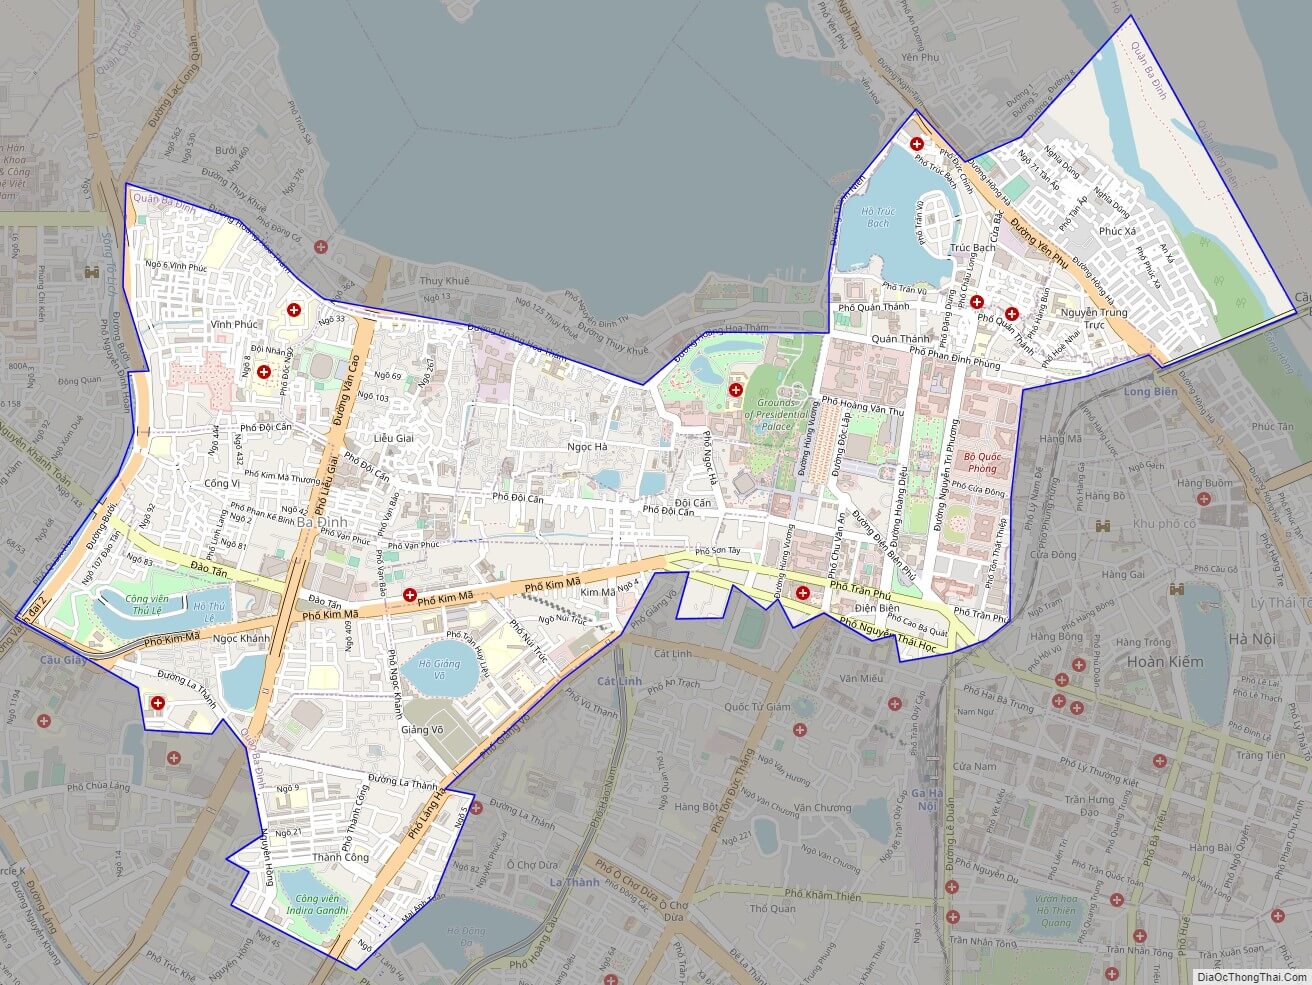 Đến năm 2024, bản đồ hành chính quận Ba Đình Hà Nội sẽ được cập nhật đầy đủ và chính xác hơn bao giờ hết. Với công nghệ tiên tiến và những dữ liệu đáng tin cậy, người dân có thể dễ dàng tra cứu thông tin về địa điểm, địa chỉ cũng như các dịch vụ công cộng tại khu vực này.